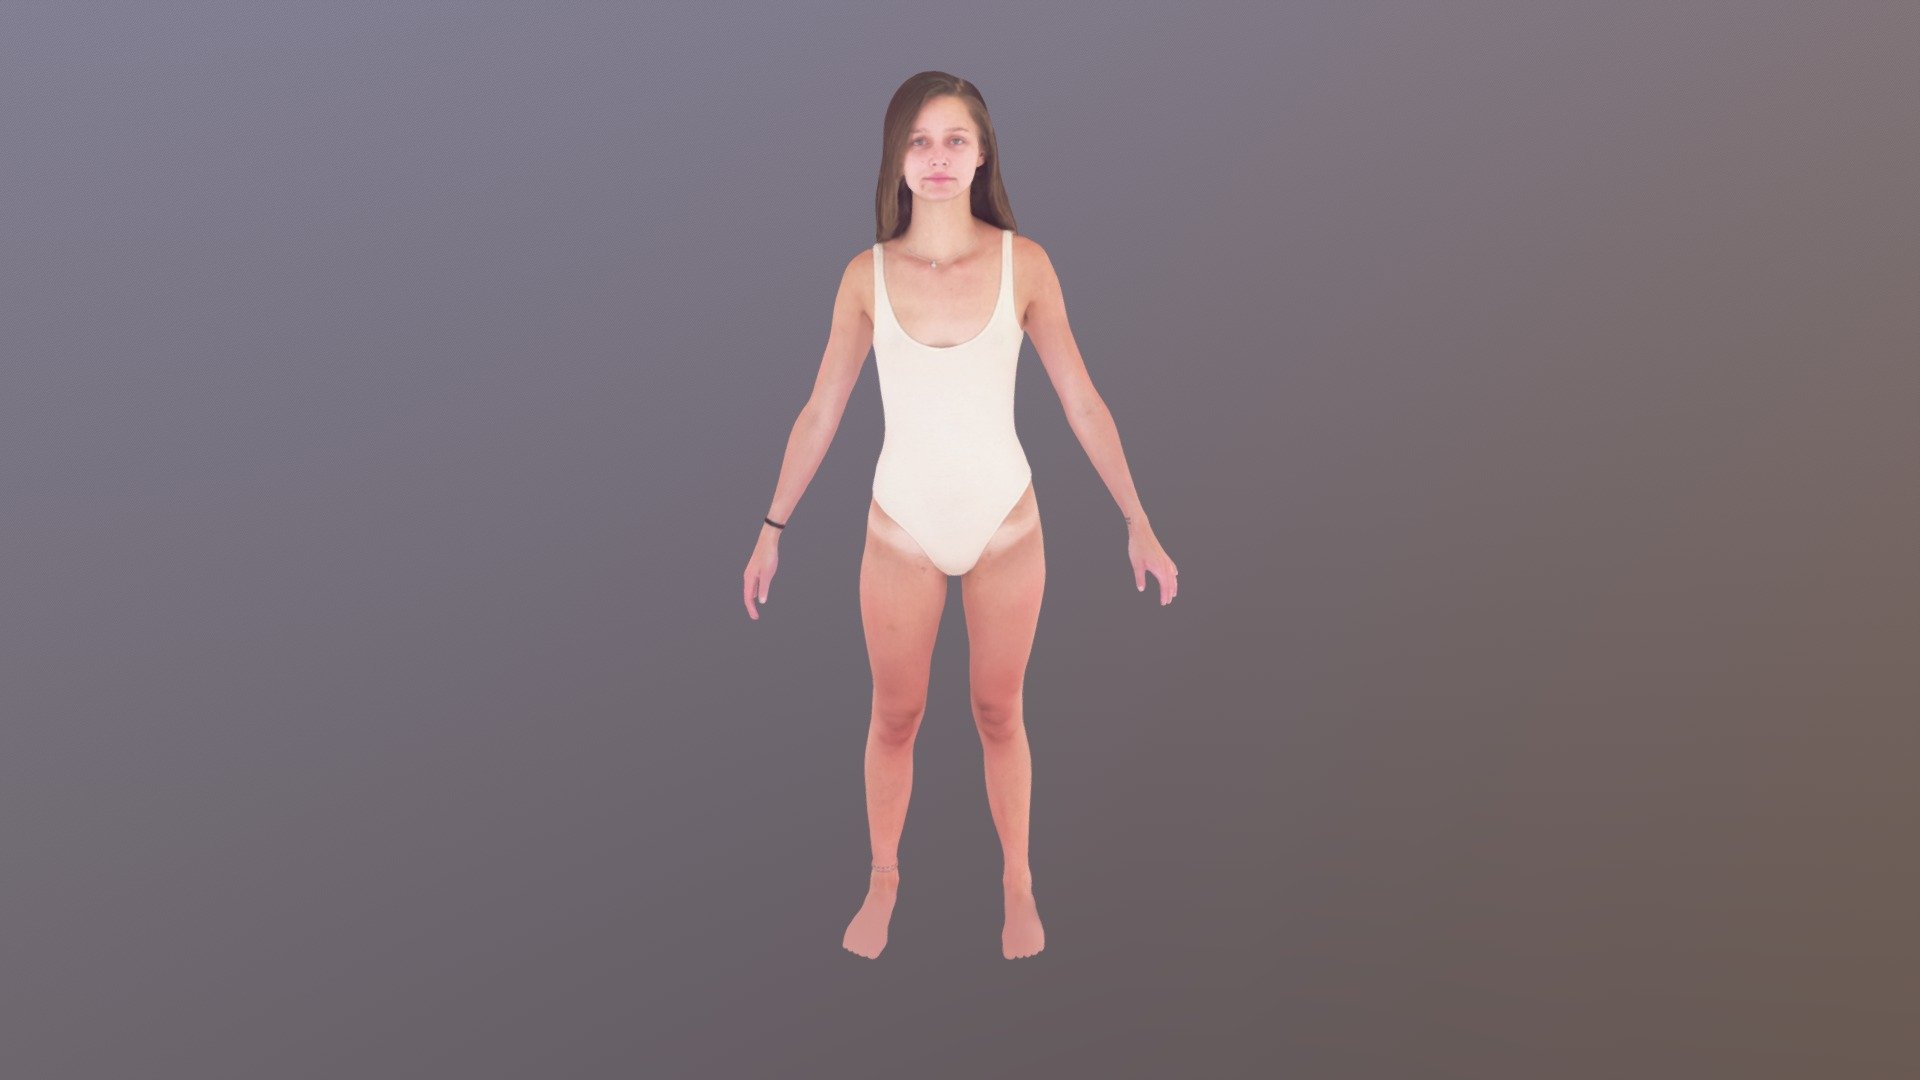 Girl in Body Suit - 3D model by PeoplePrints 3D (@peopleprints3d) 3d model